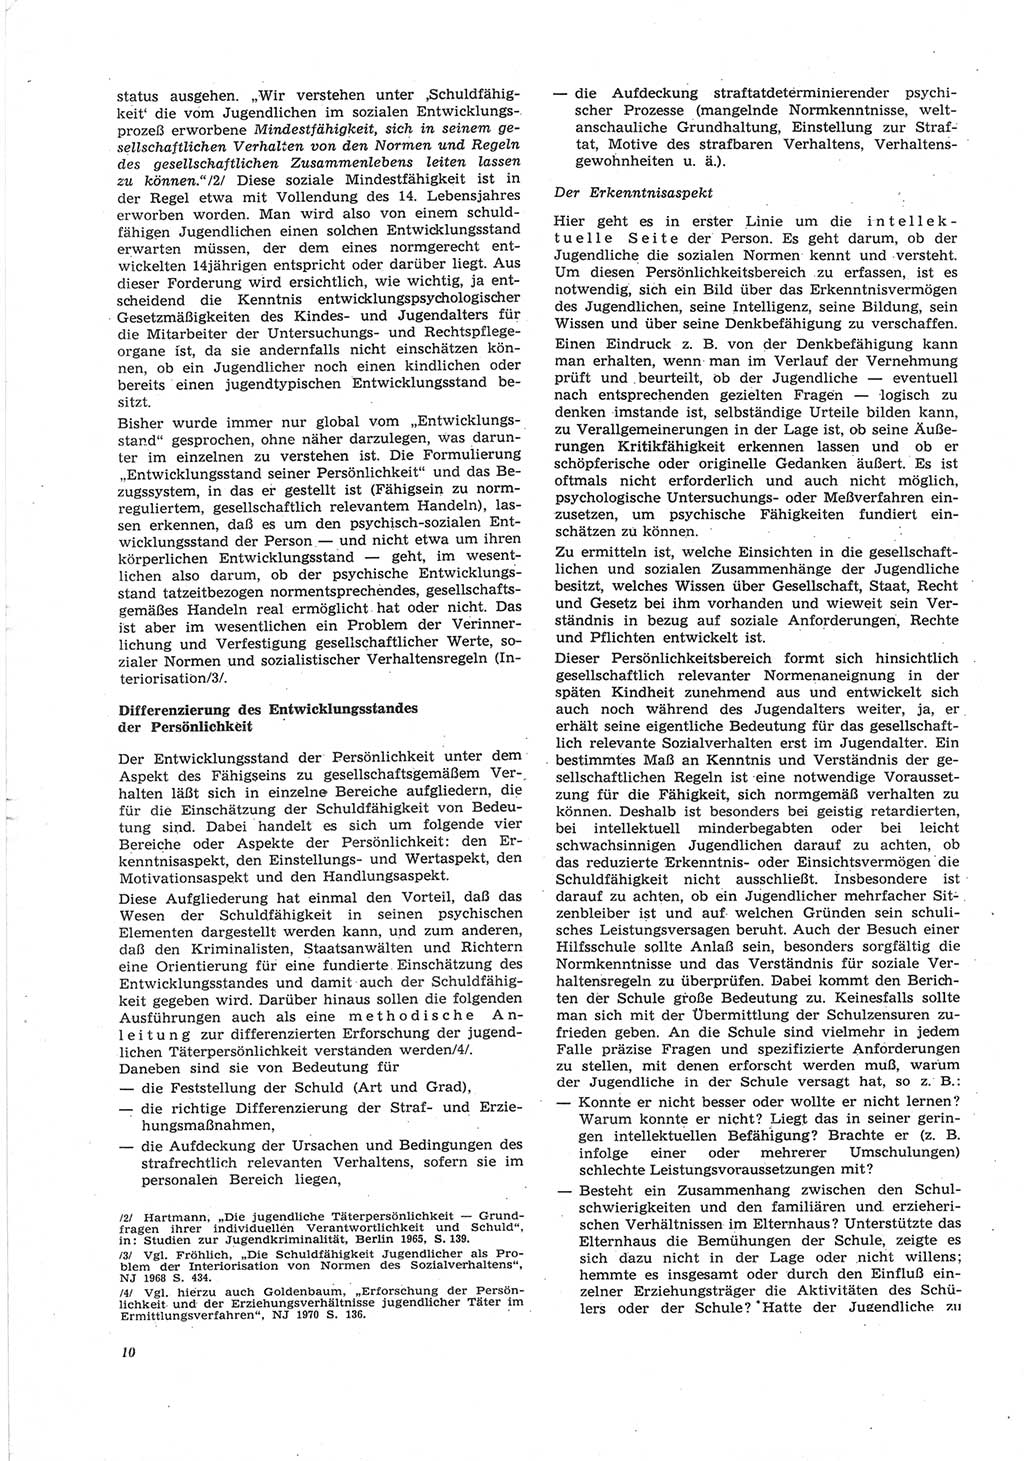 Neue Justiz (NJ), Zeitschrift für Recht und Rechtswissenschaft [Deutsche Demokratische Republik (DDR)], 25. Jahrgang 1971, Seite 10 (NJ DDR 1971, S. 10)